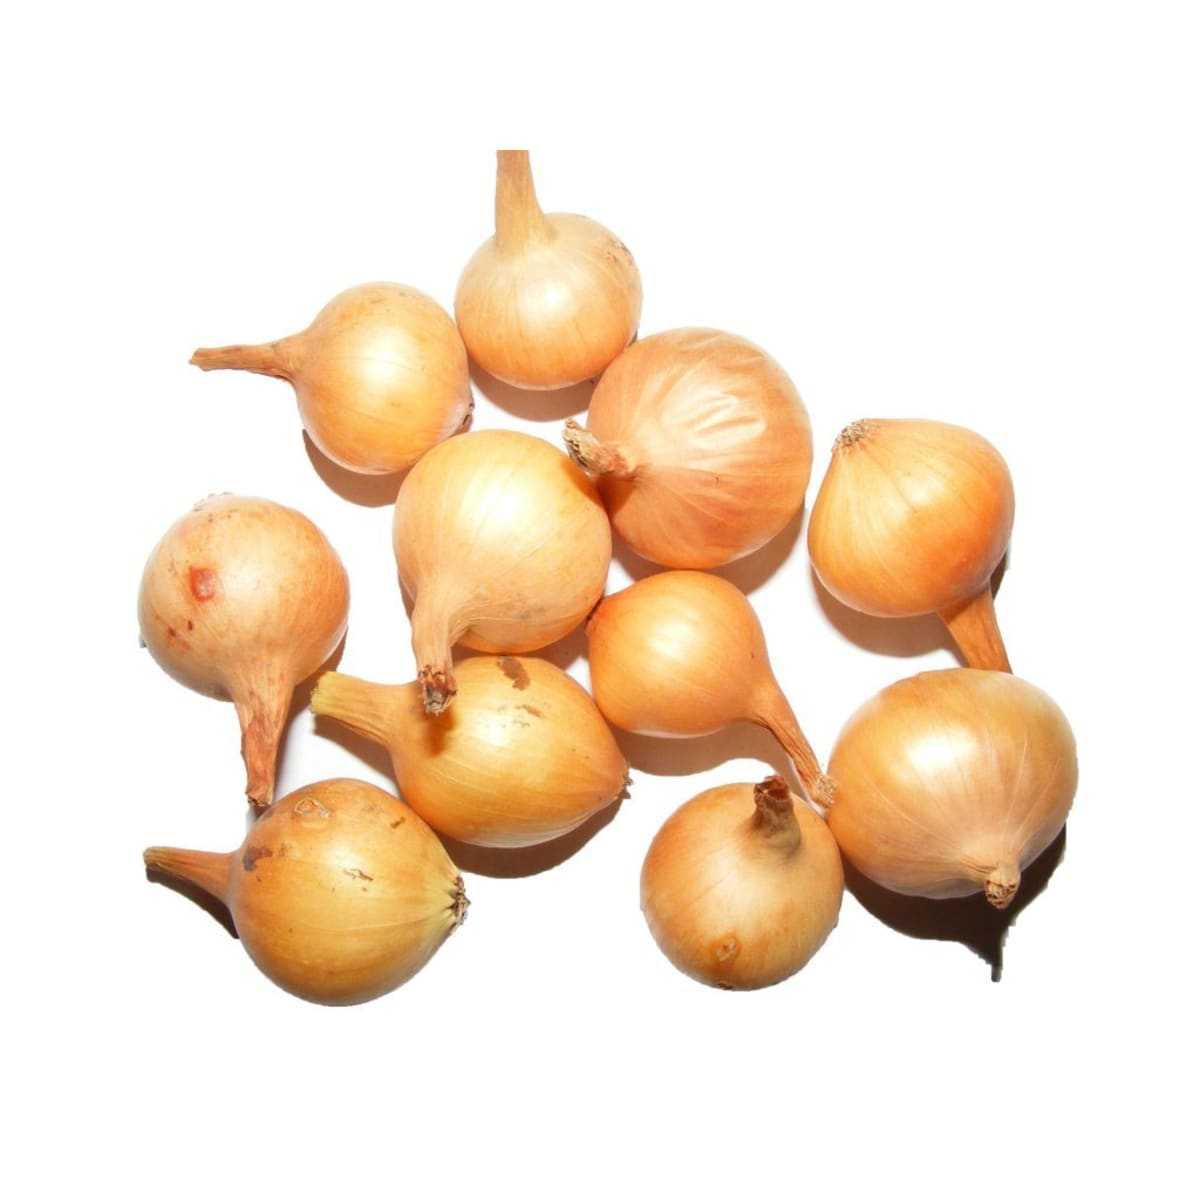 Популярный сорт лука геркулес. описание, выращивание и уход, сбор и хранение урожая